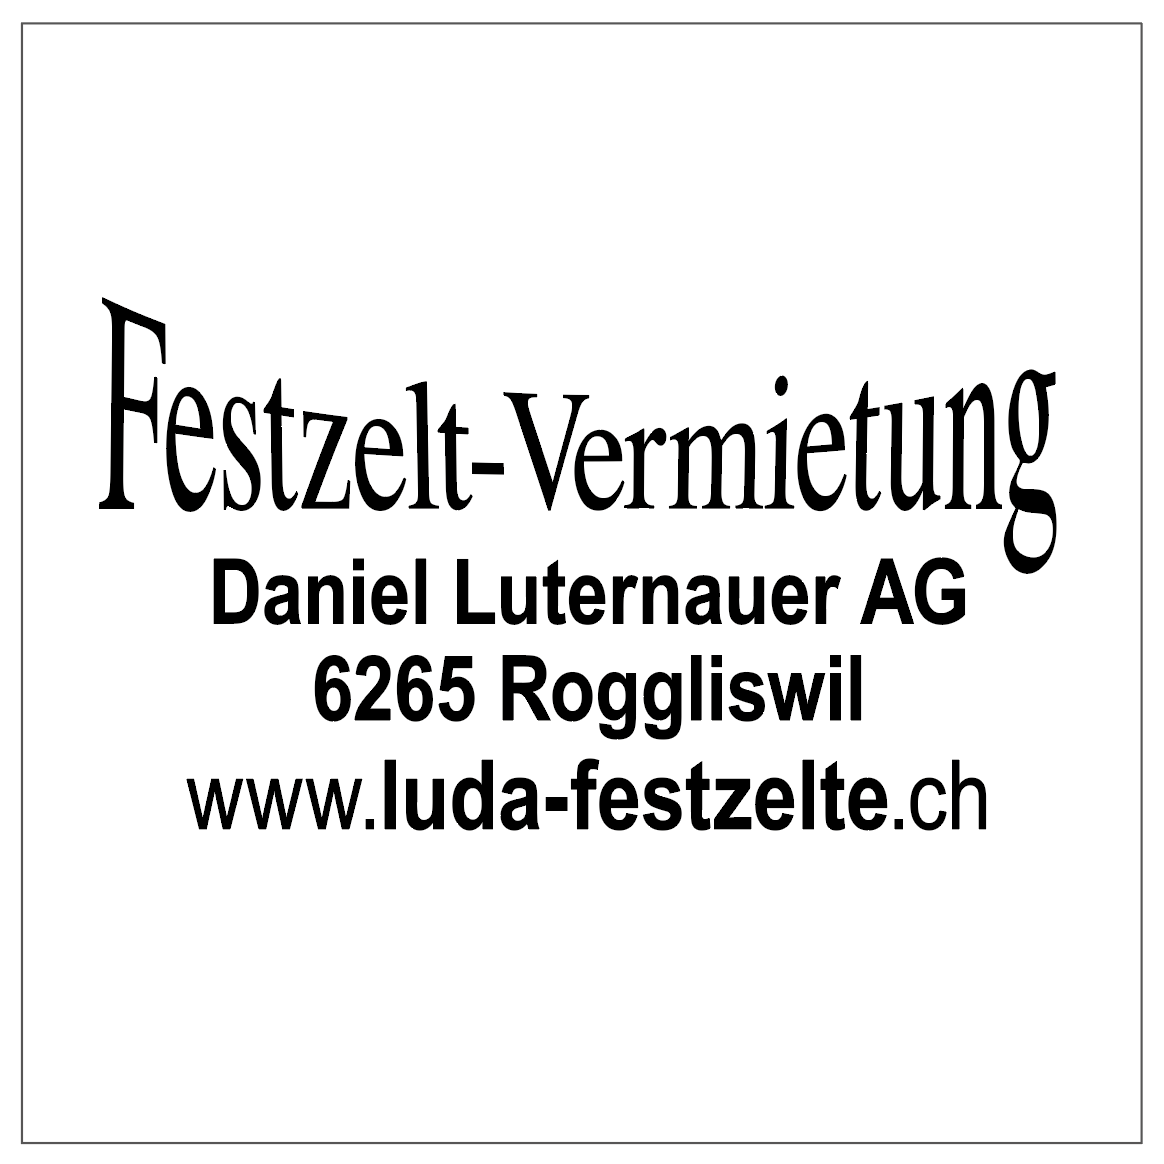 Festzelt-Vermietung Daniel Luternauer AG